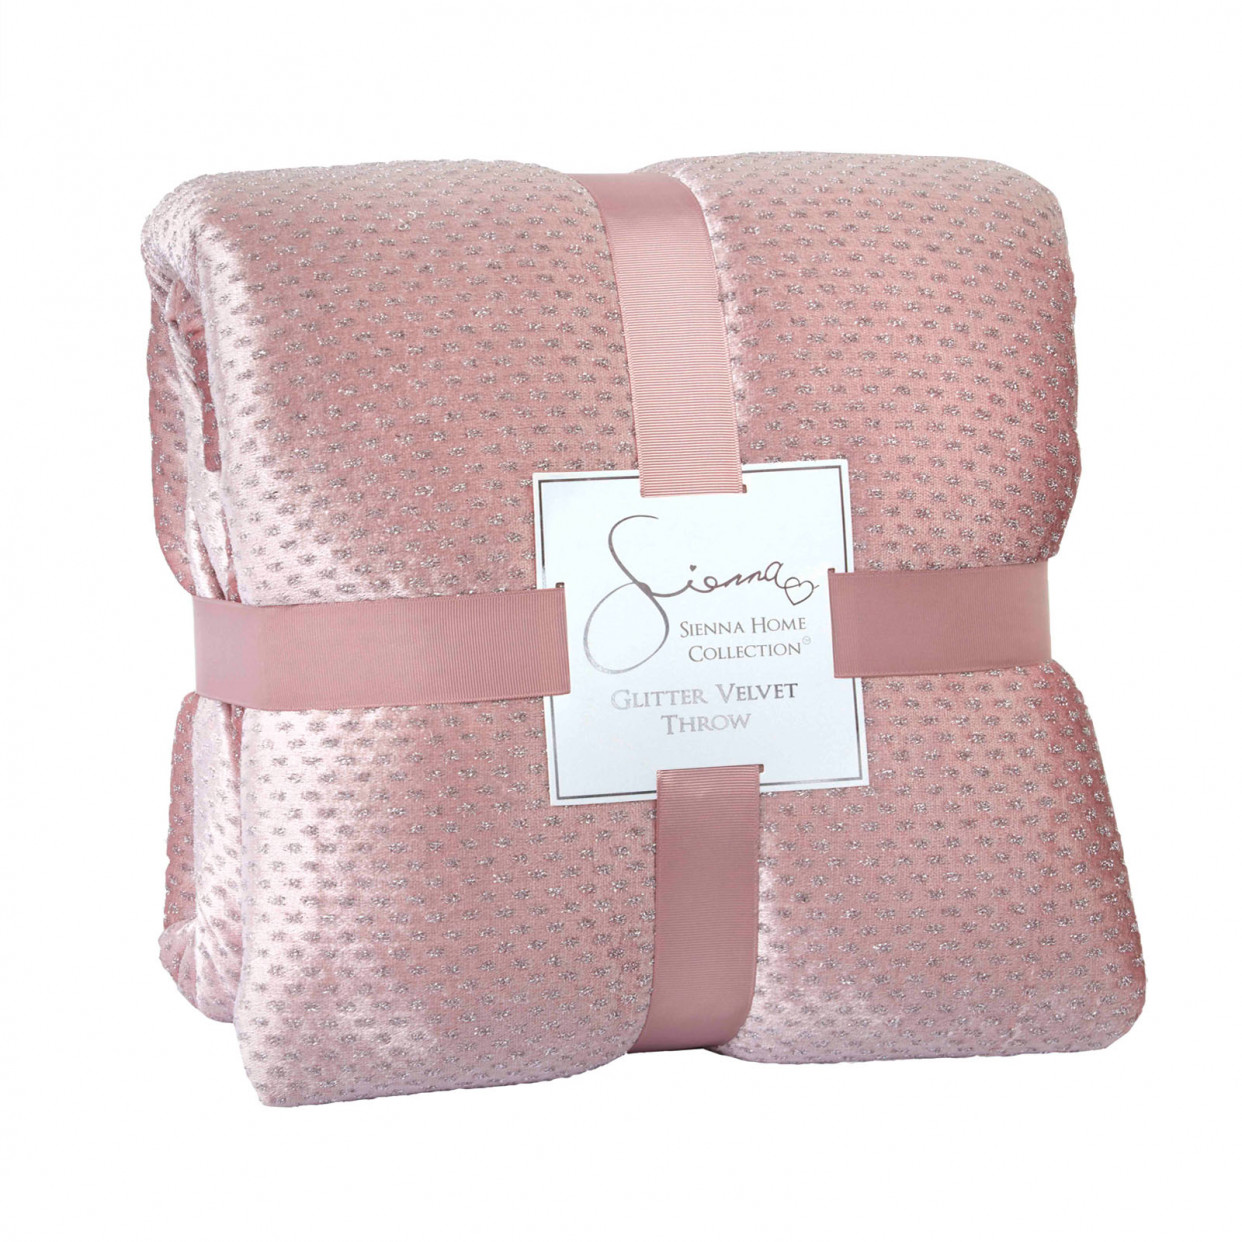 Sienna Glitter Velvet Bedspread Throw - Blush, 150 x 200cm>